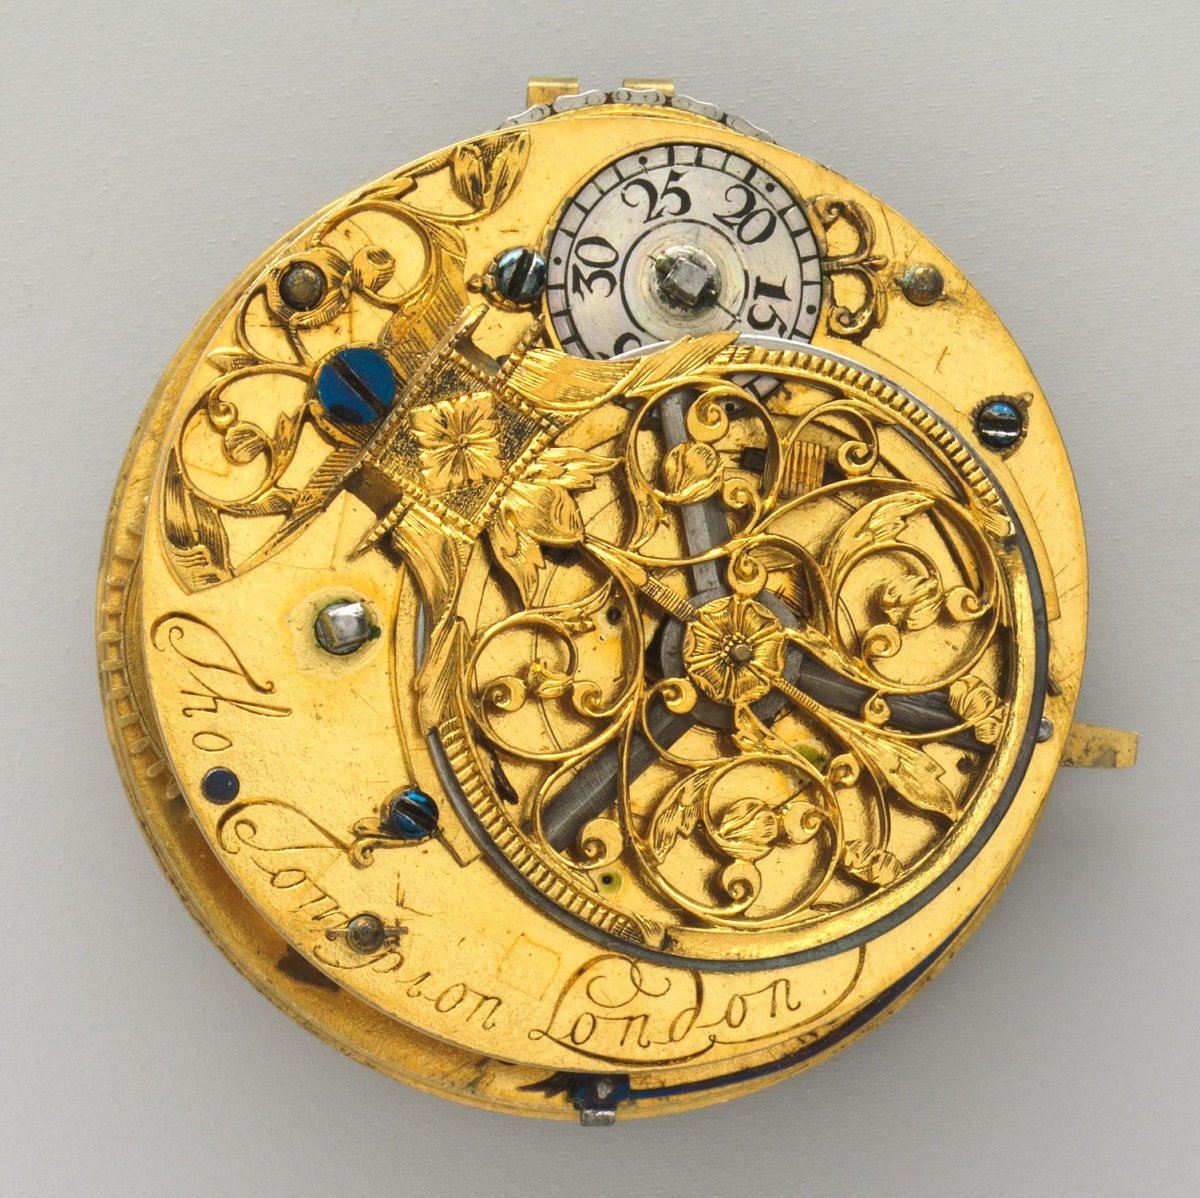 Механические часы с двенадцатичасовым циферблатом